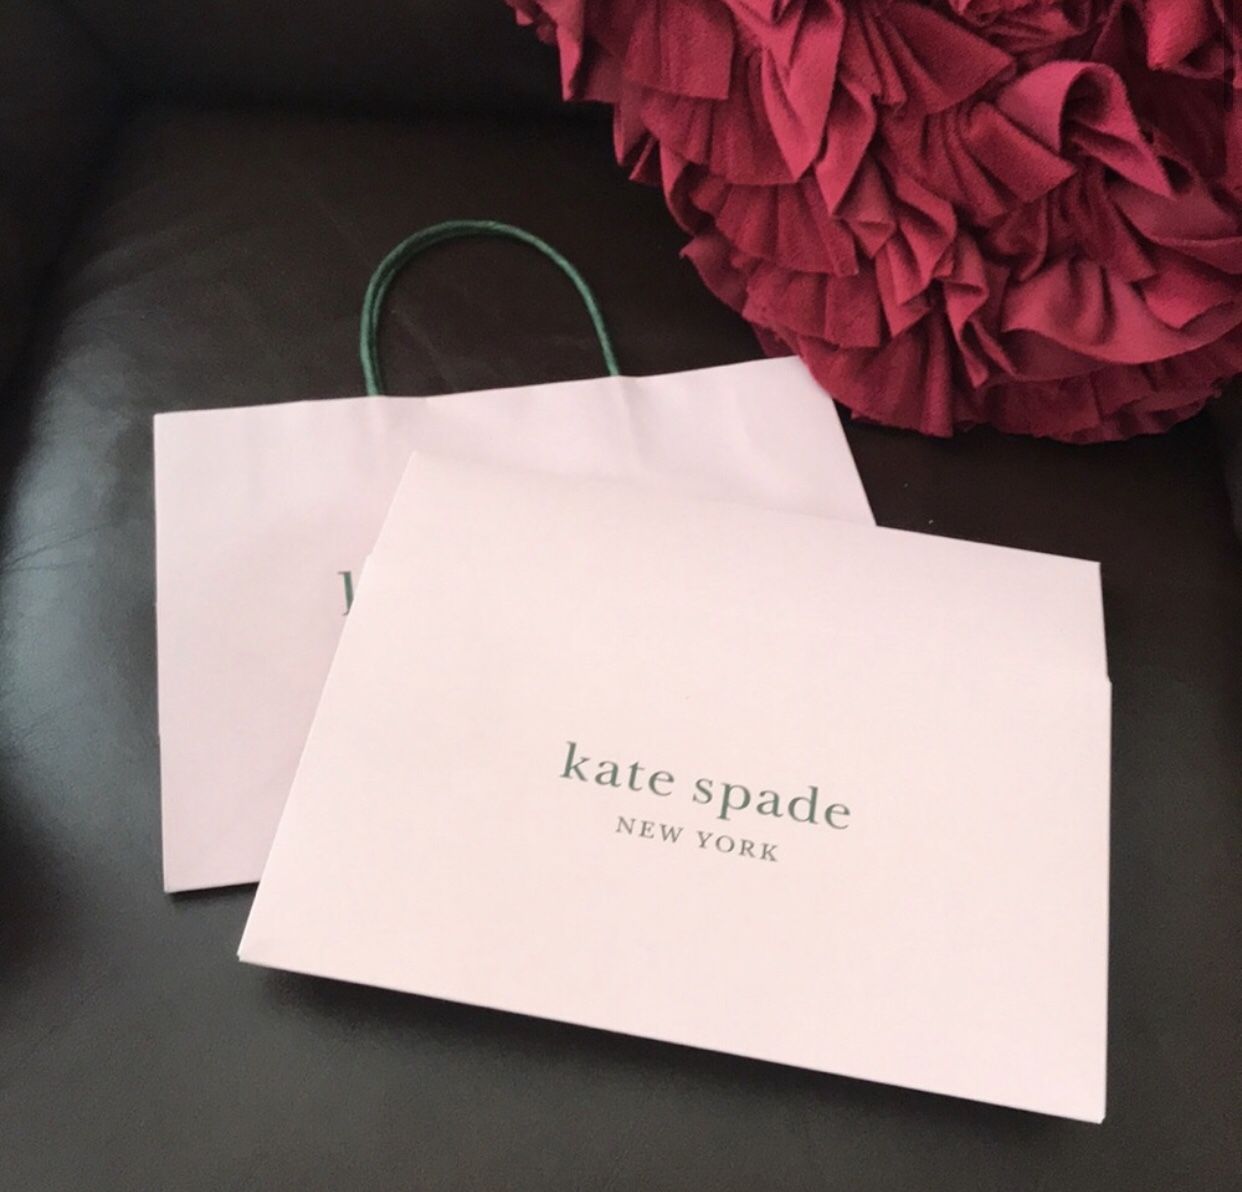 Kate spade gift box/shopping bag